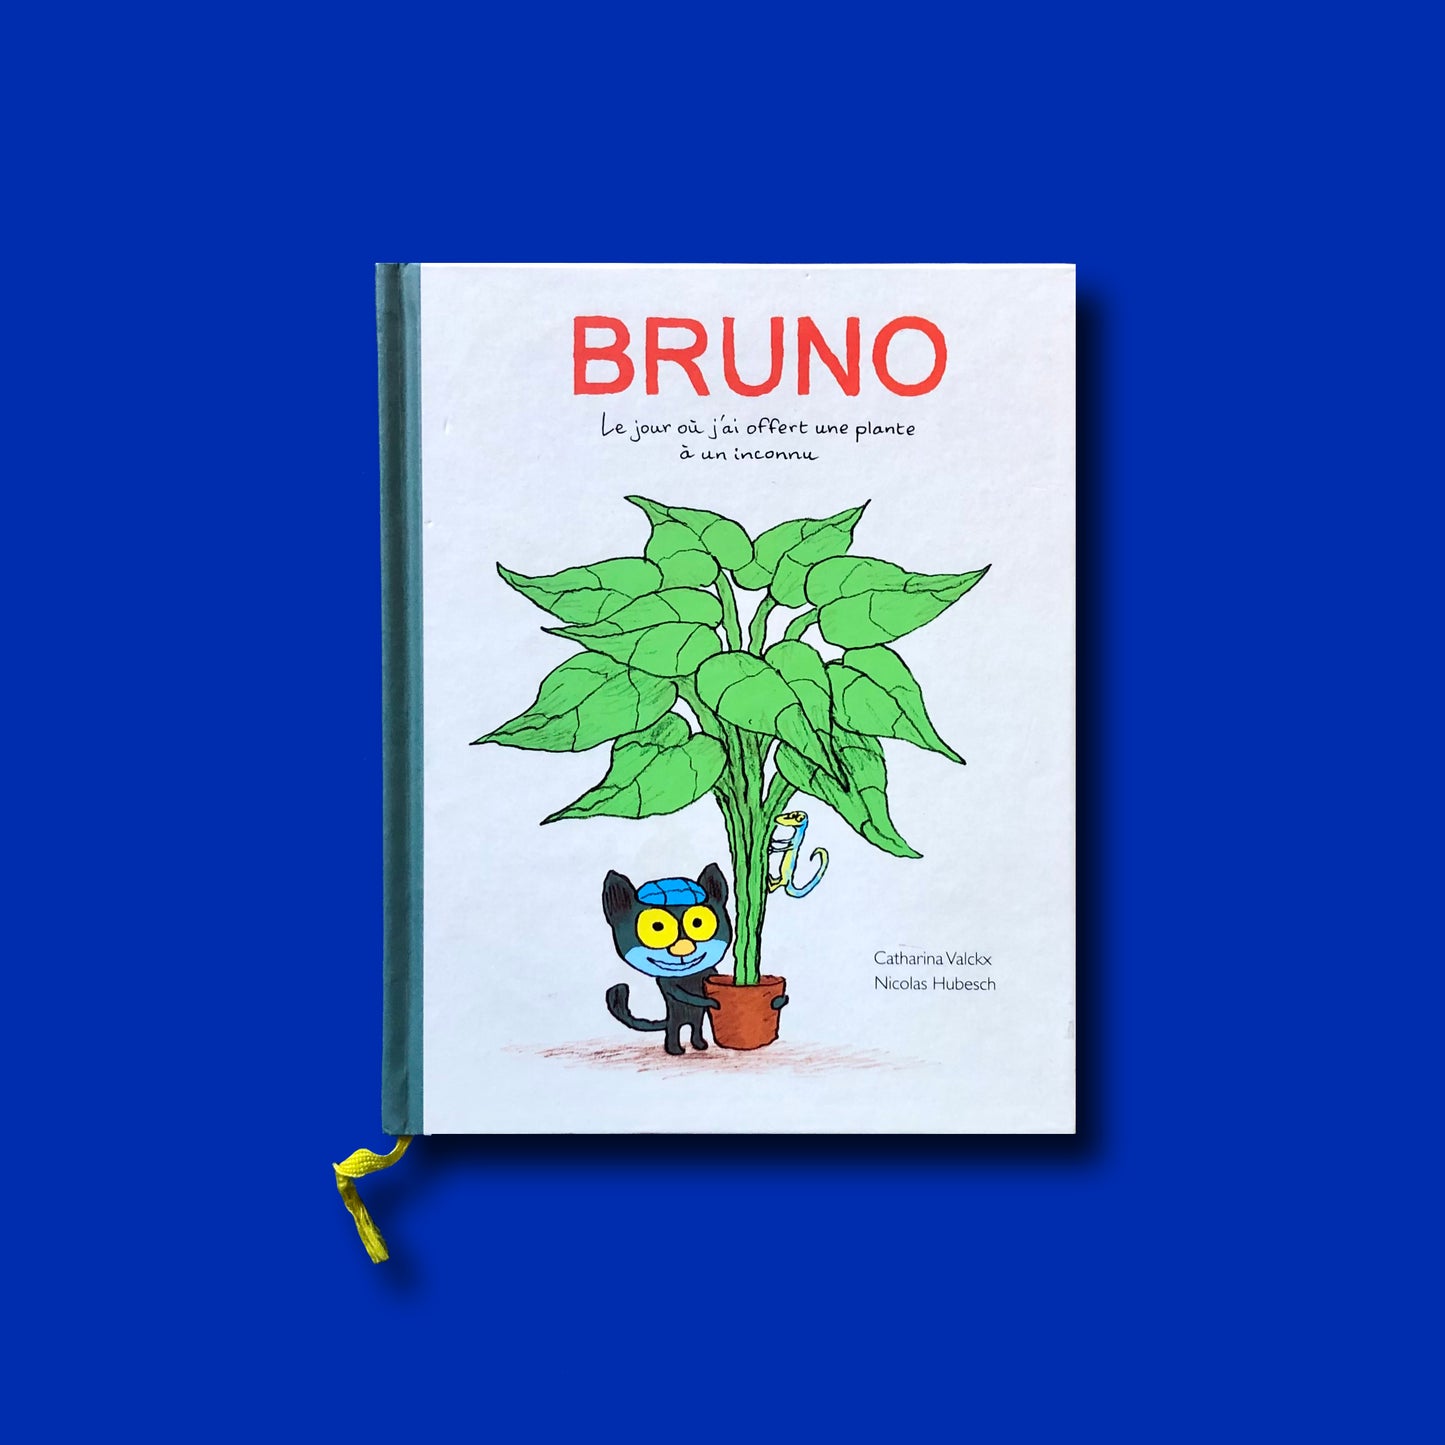 Bruno - Le jour où j'ai offert une plante à un inconnu